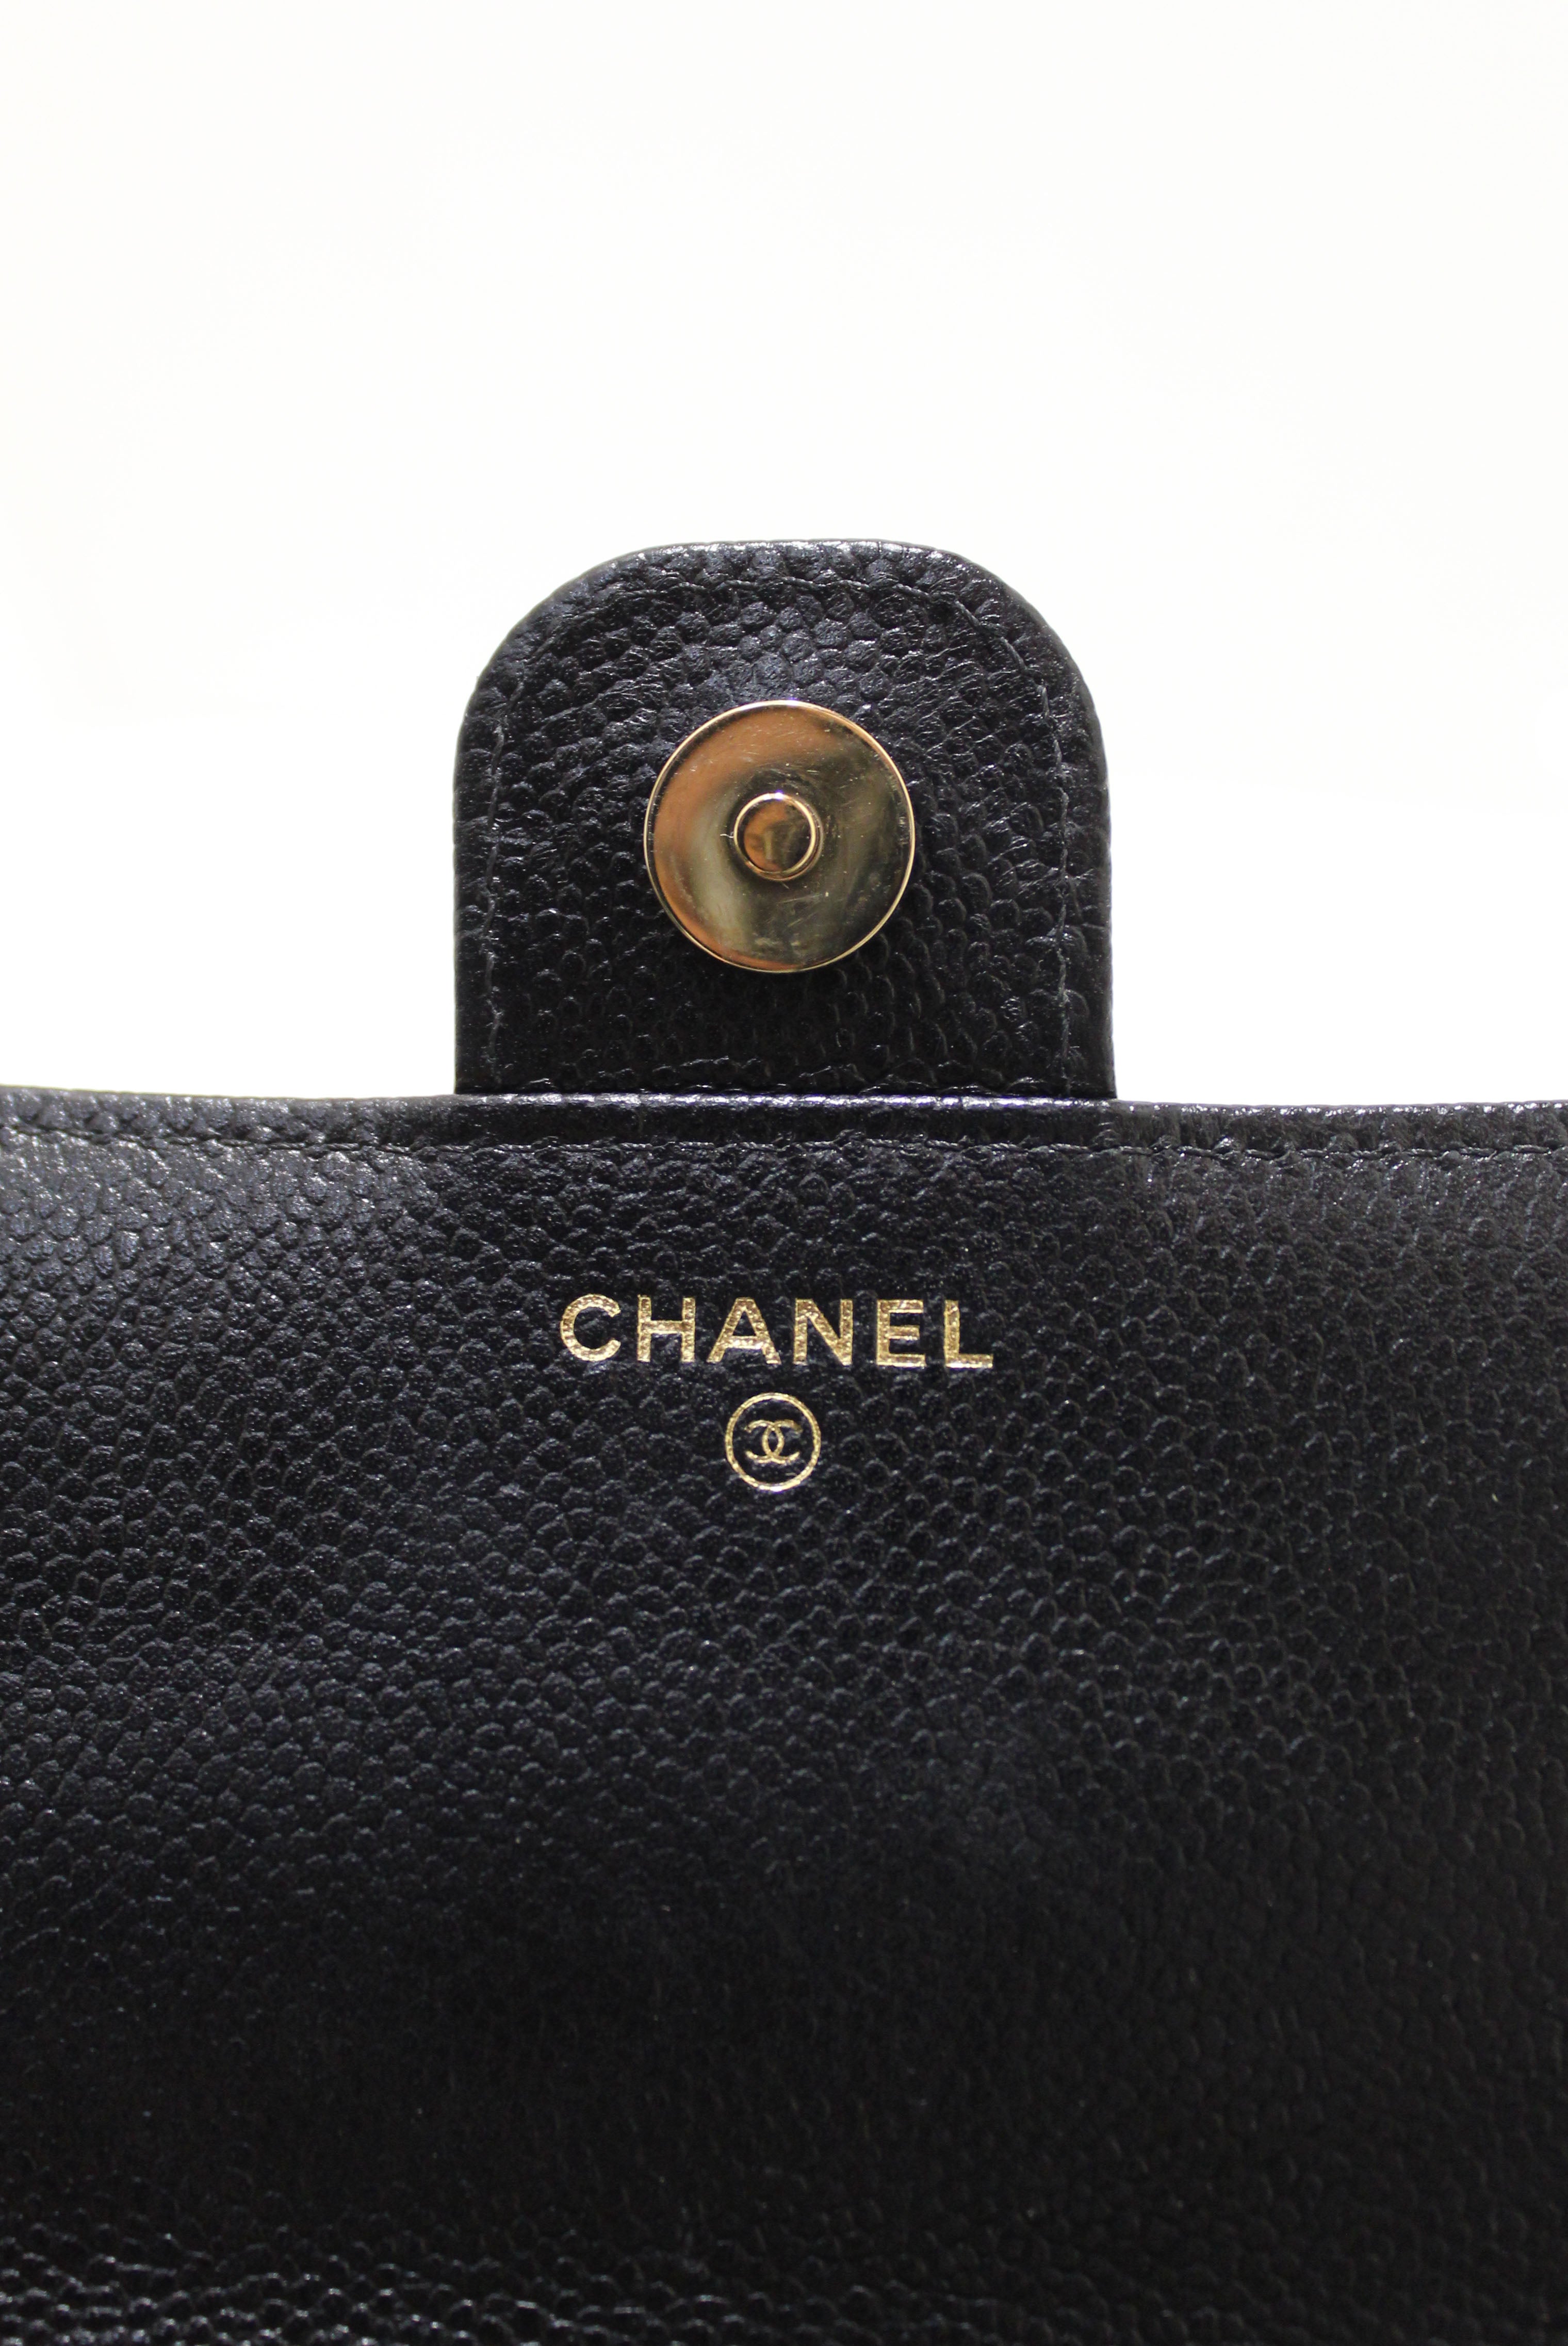 Authentic Chanel Bag  Authentic chanel bags, Chanel bag, Bags